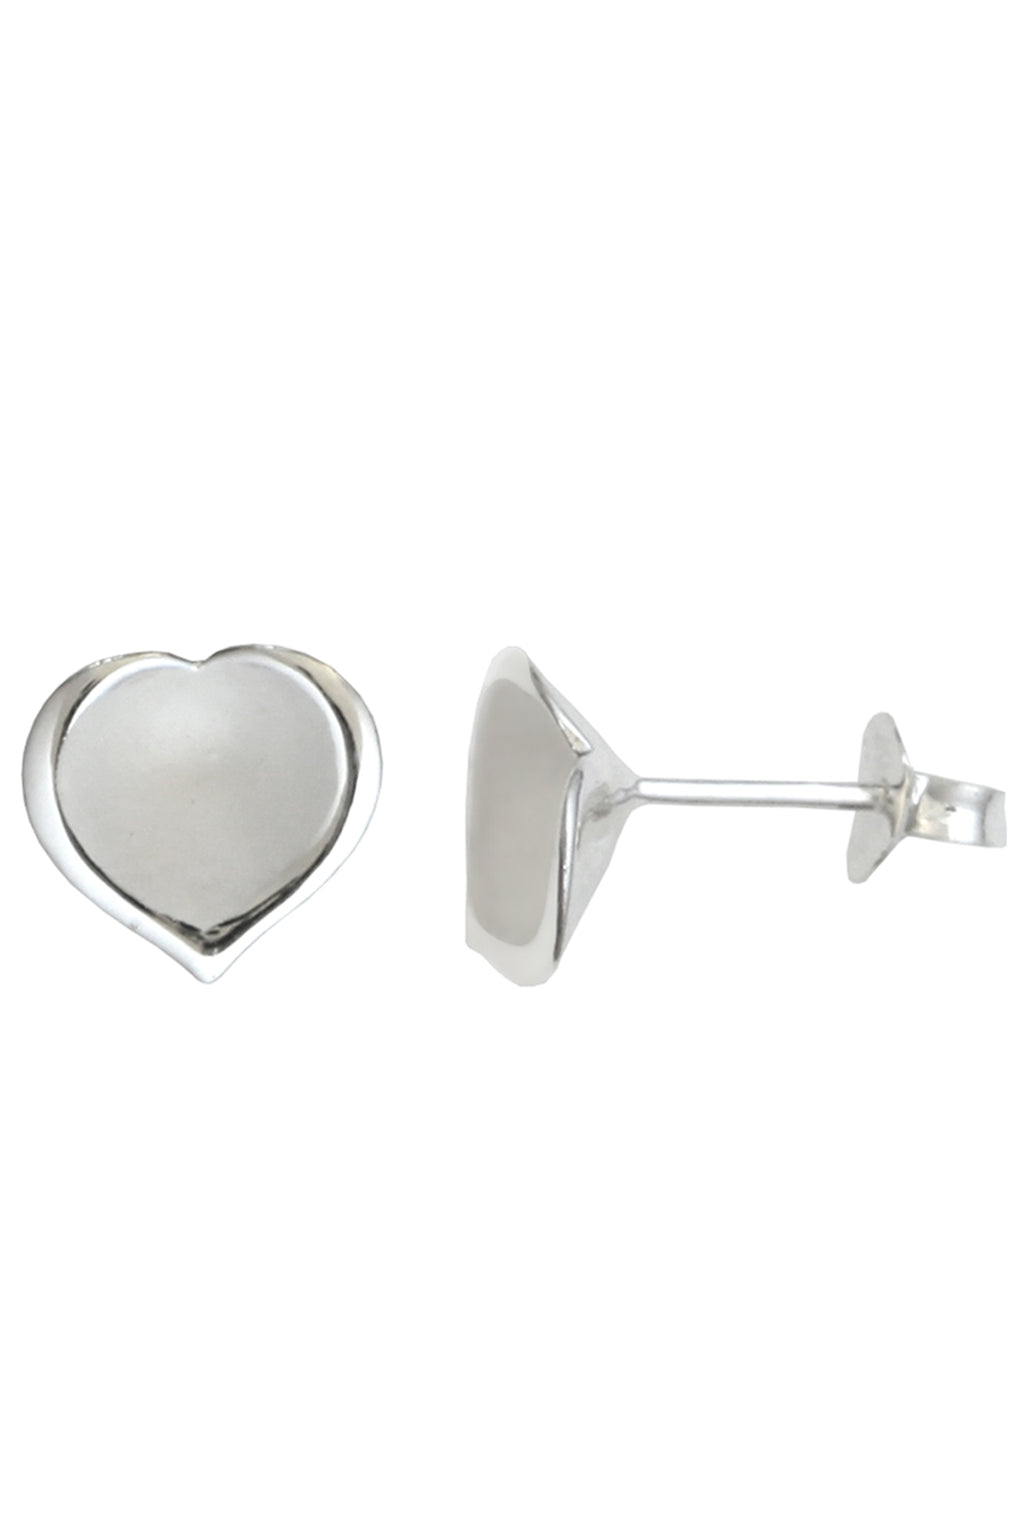 Brushed Silver Heart Earrings